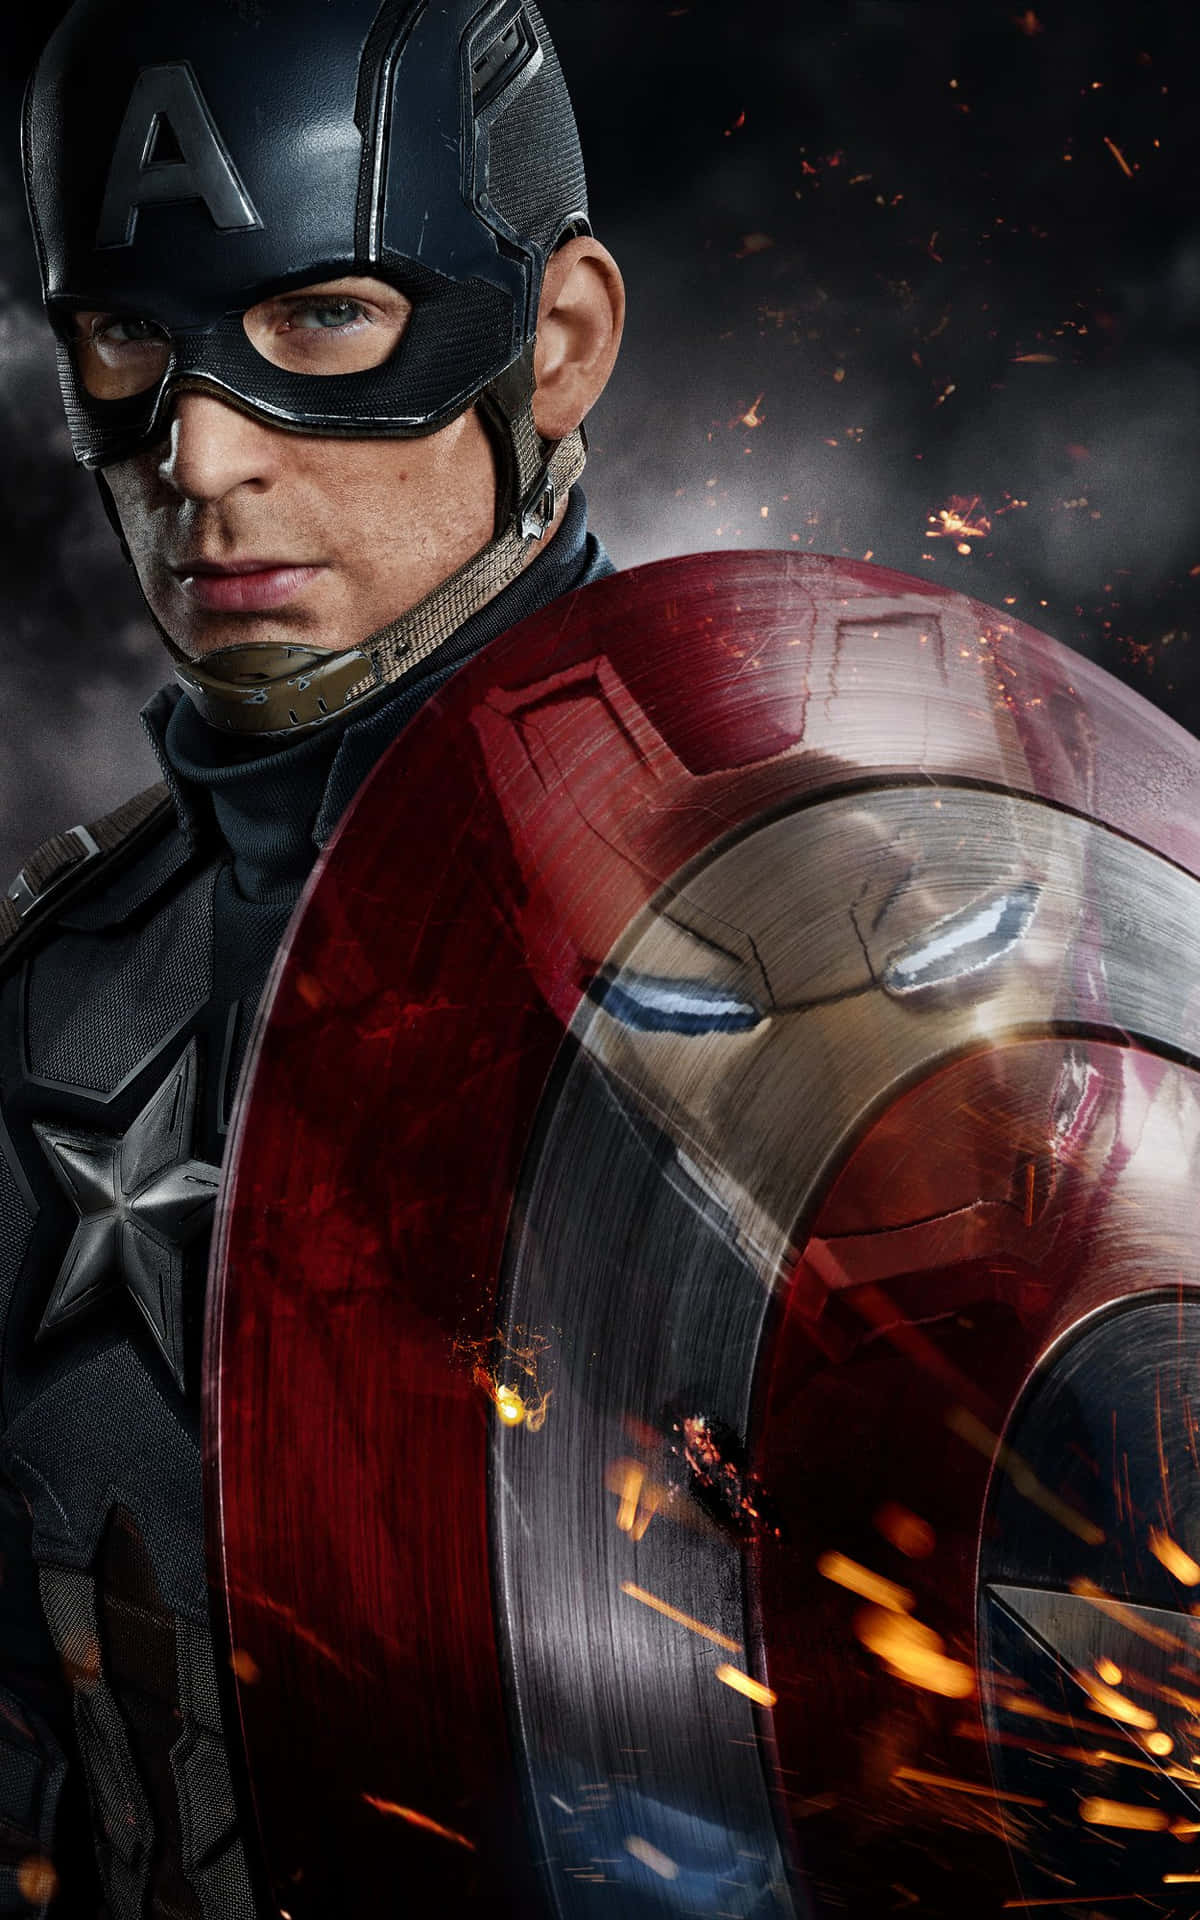 Enavancerad Android Som Imiterar Captain America. Wallpaper